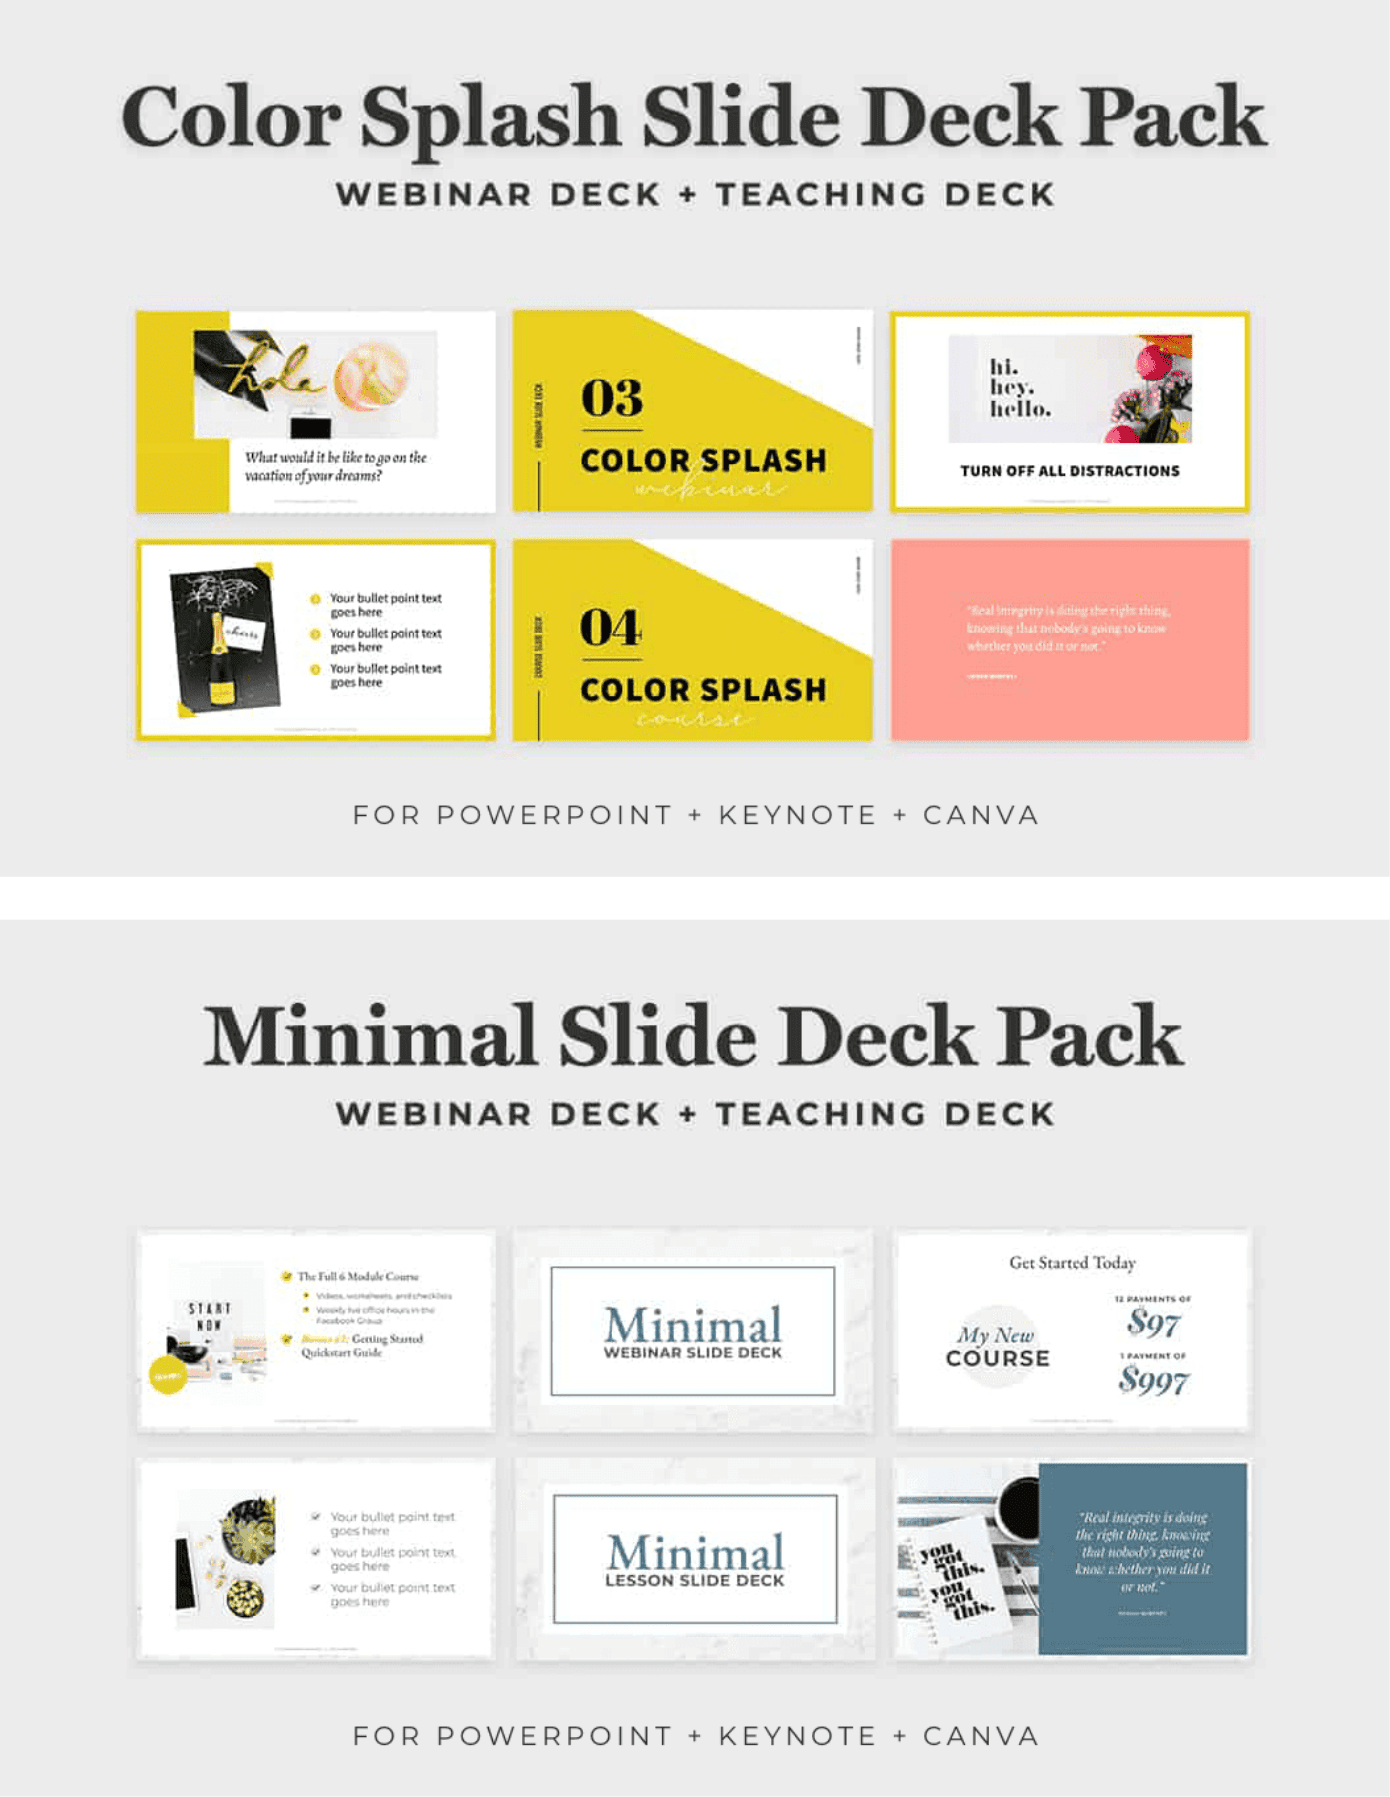 color splash slide deck and minimal slide deck packs